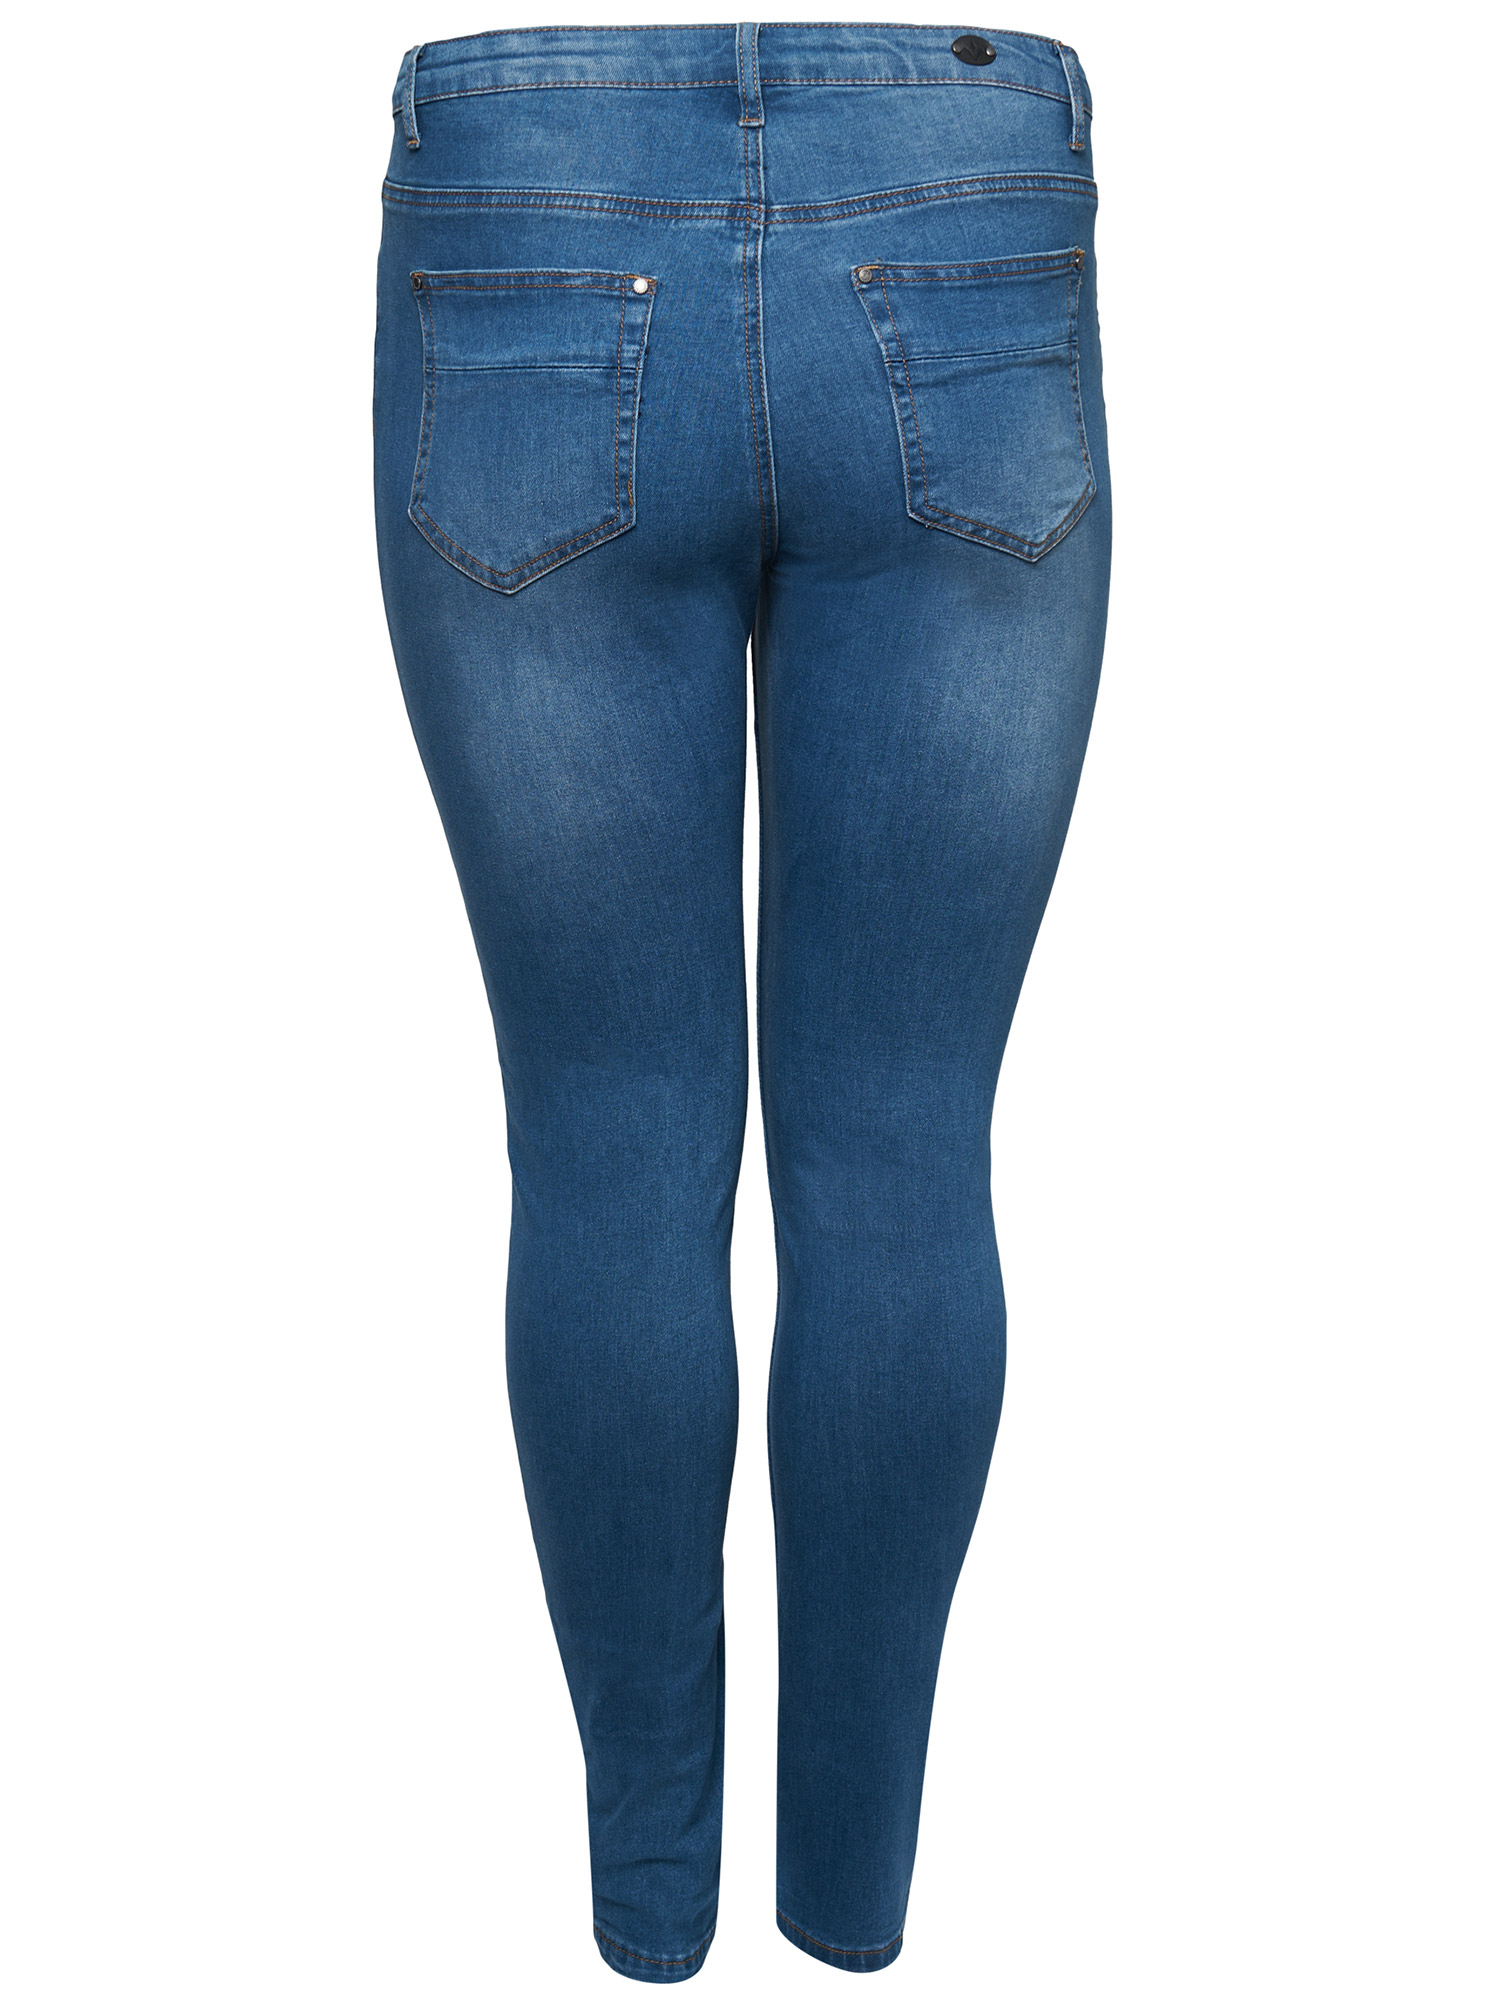 MILAN - Lyseblå jeans fra Adia